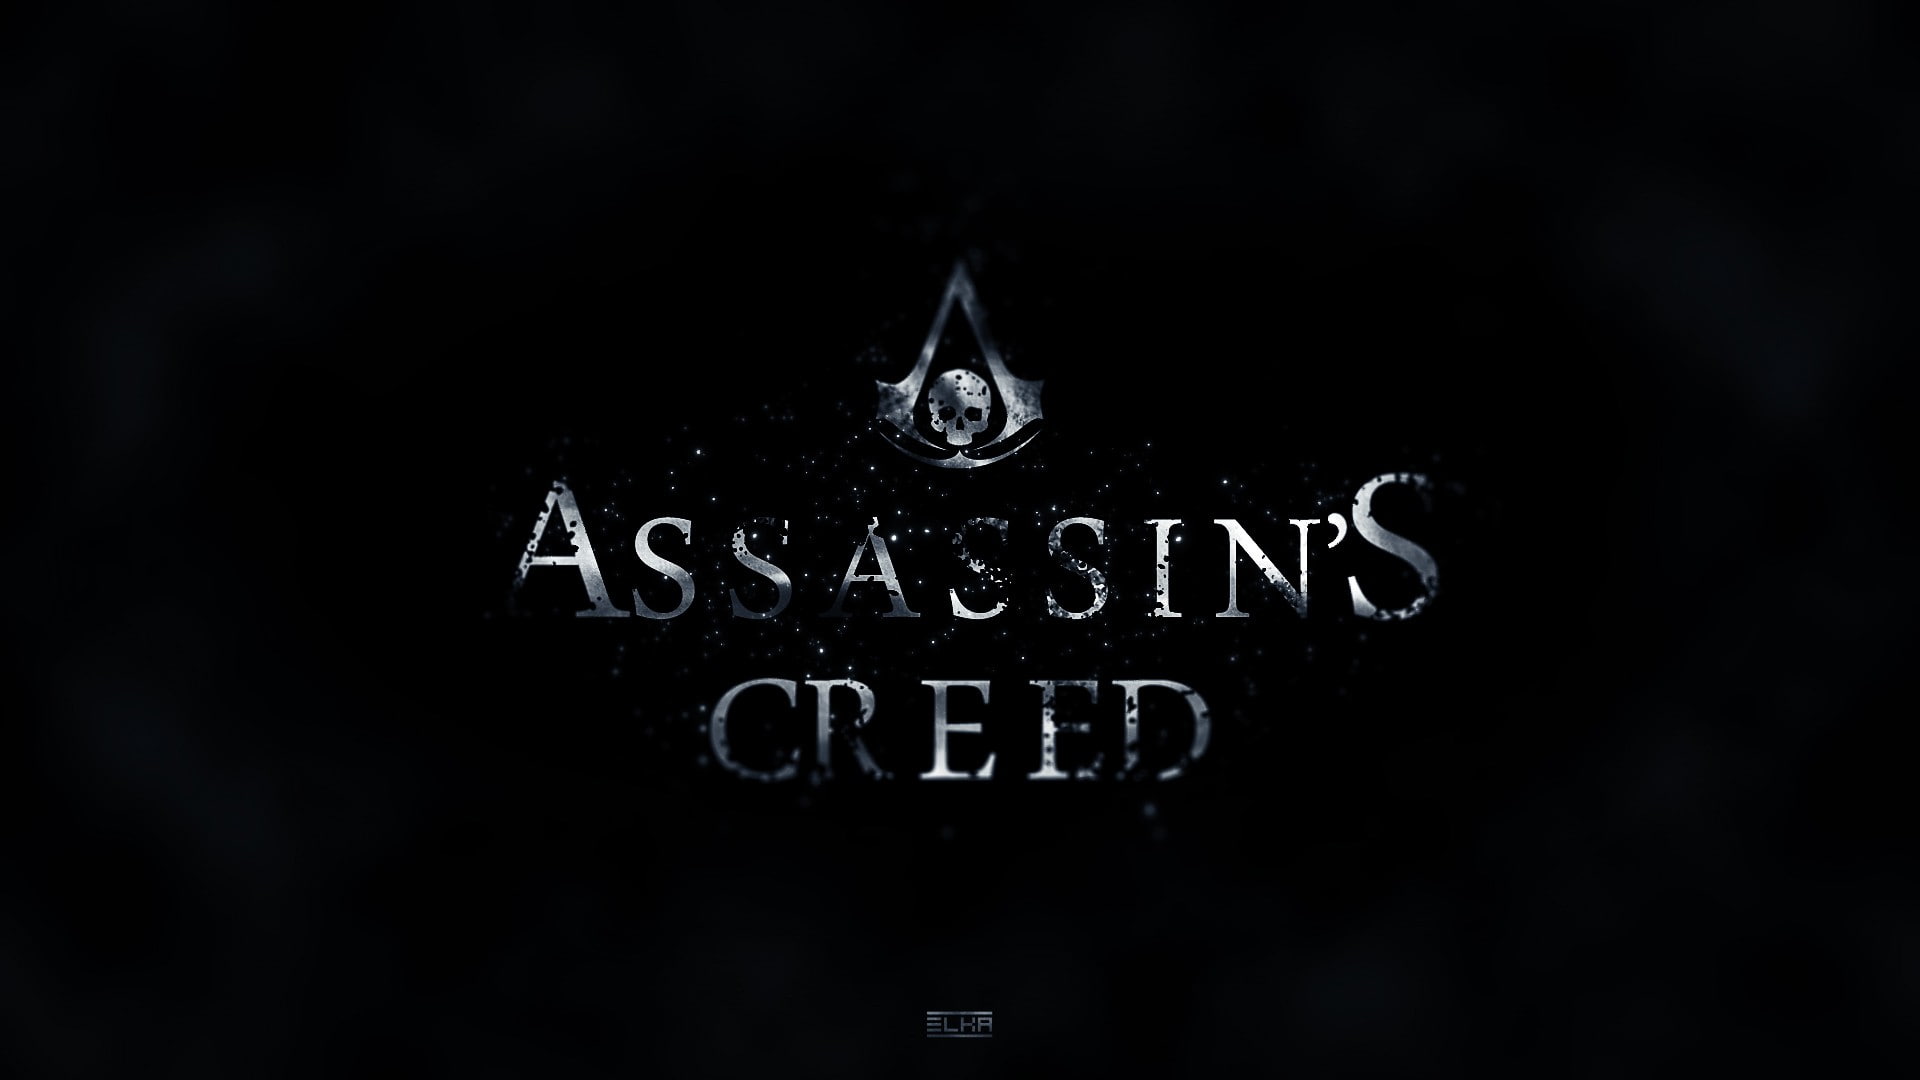 Assassins Creed IV: Black Flag symbol, an assassin, a symbol